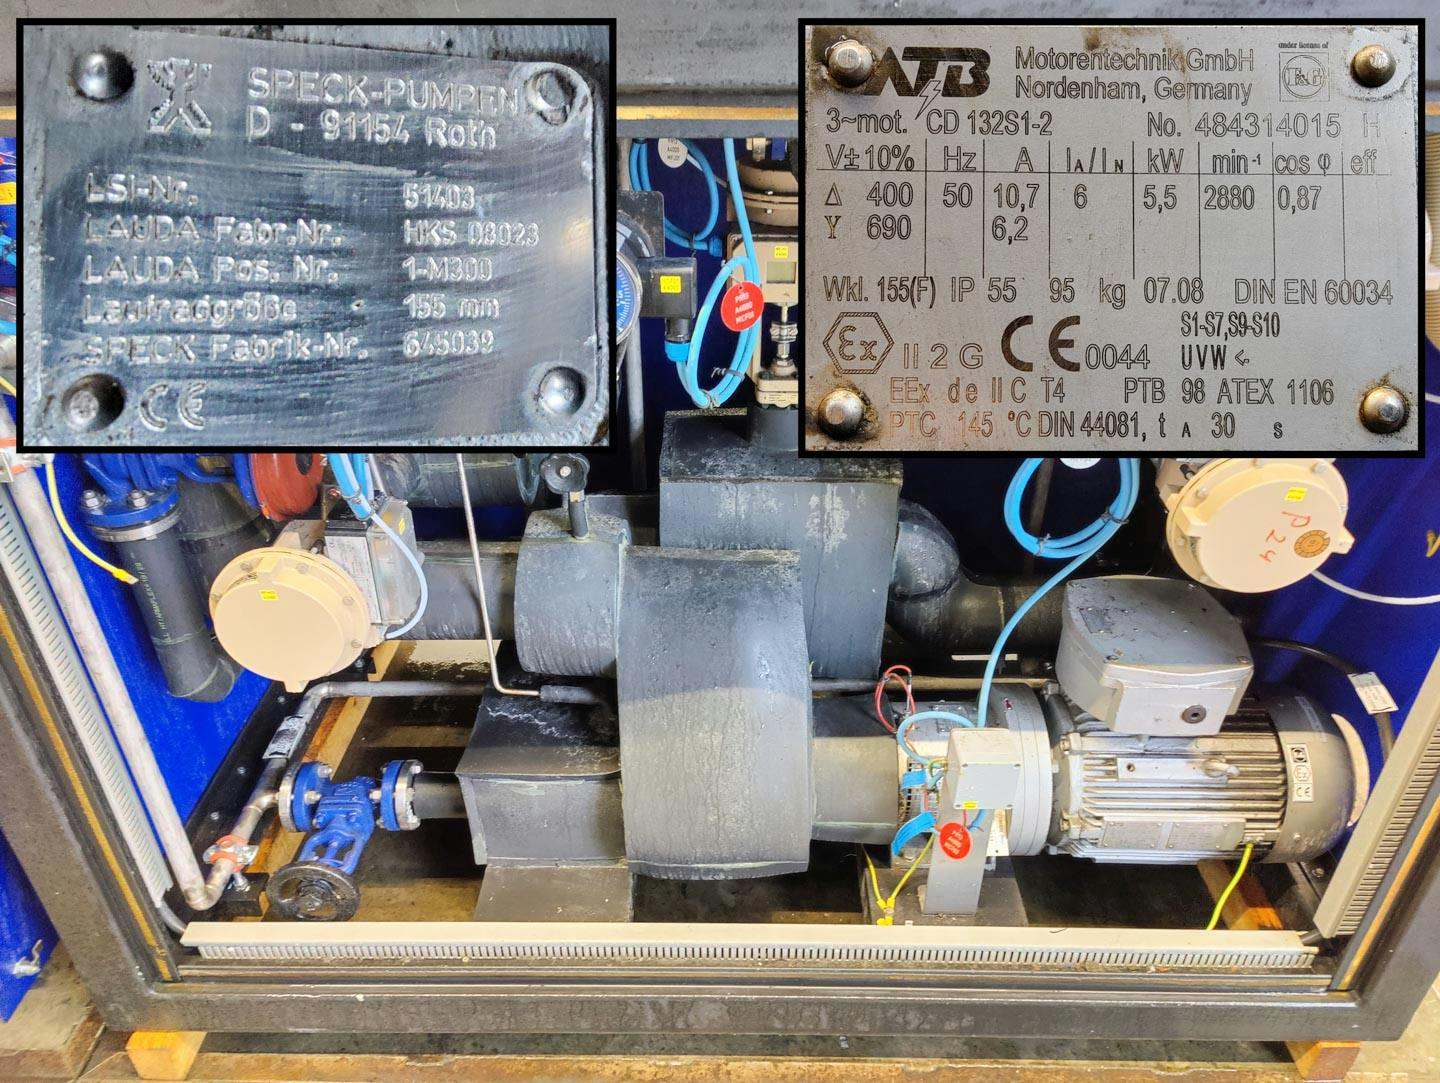 Lauda TR400 HK/KT-EX "secondary circuit system" - Temperature control unit - image 11